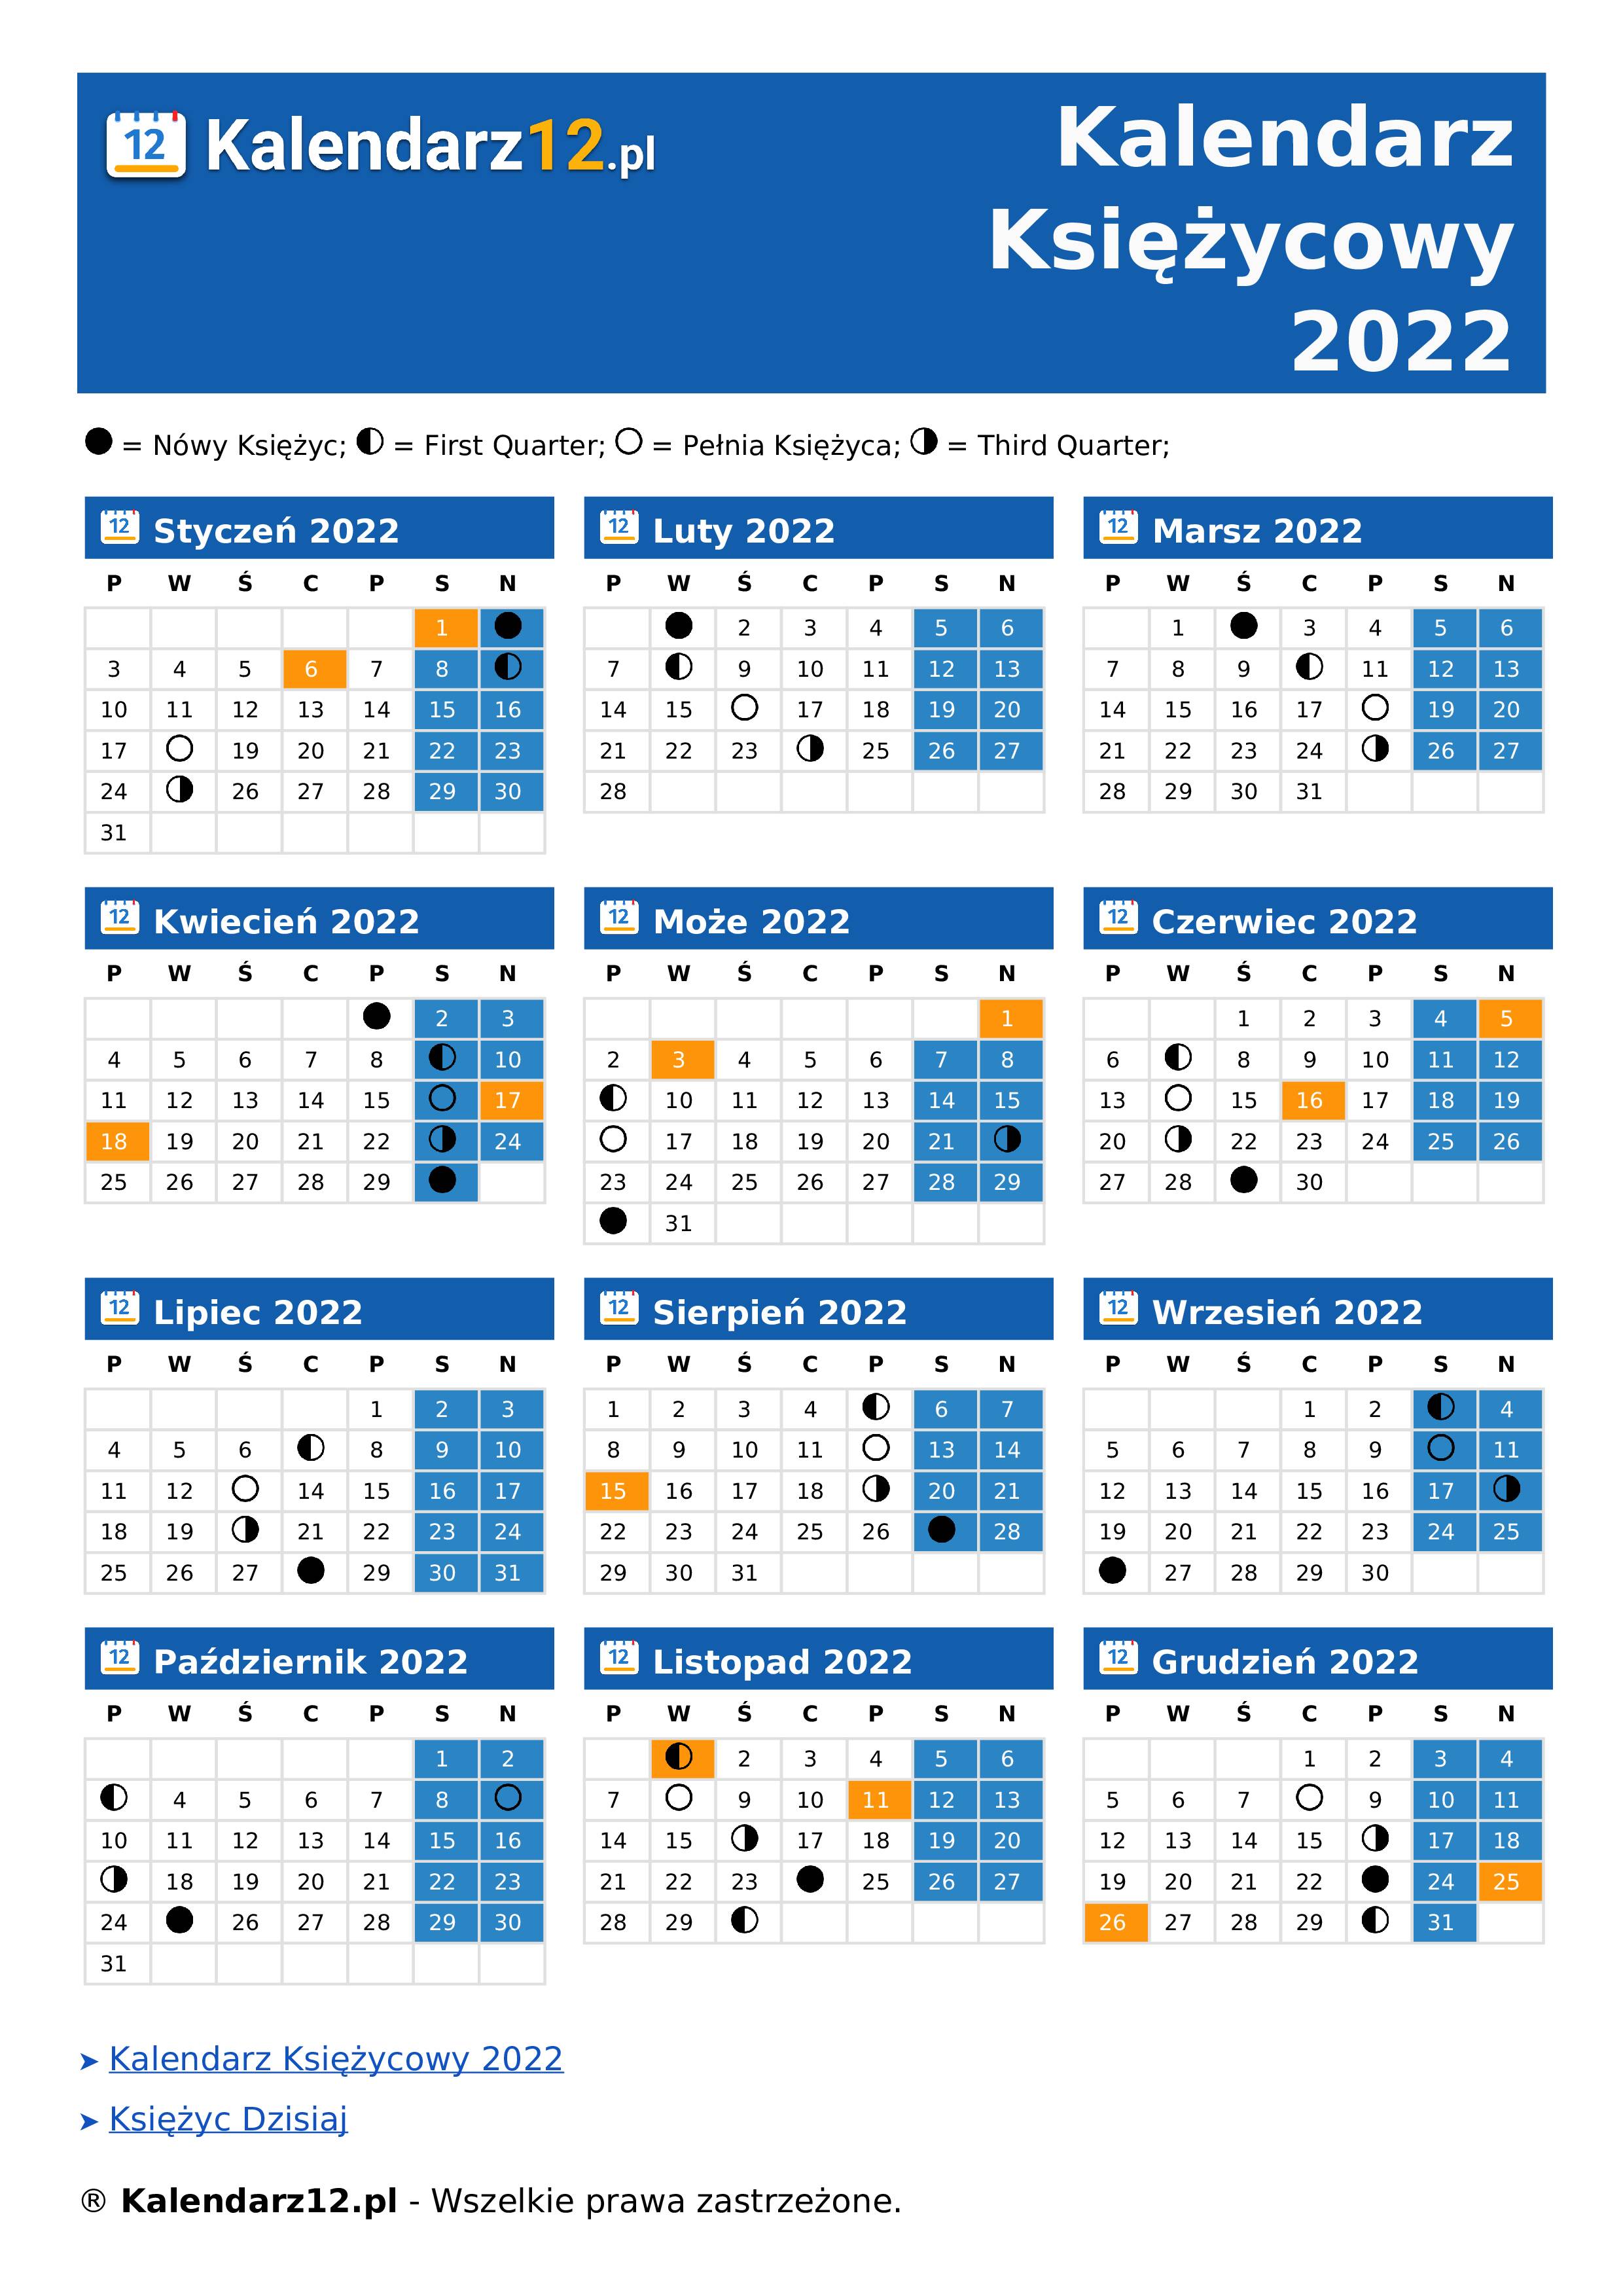 Kalendarz Księżycowy 2022